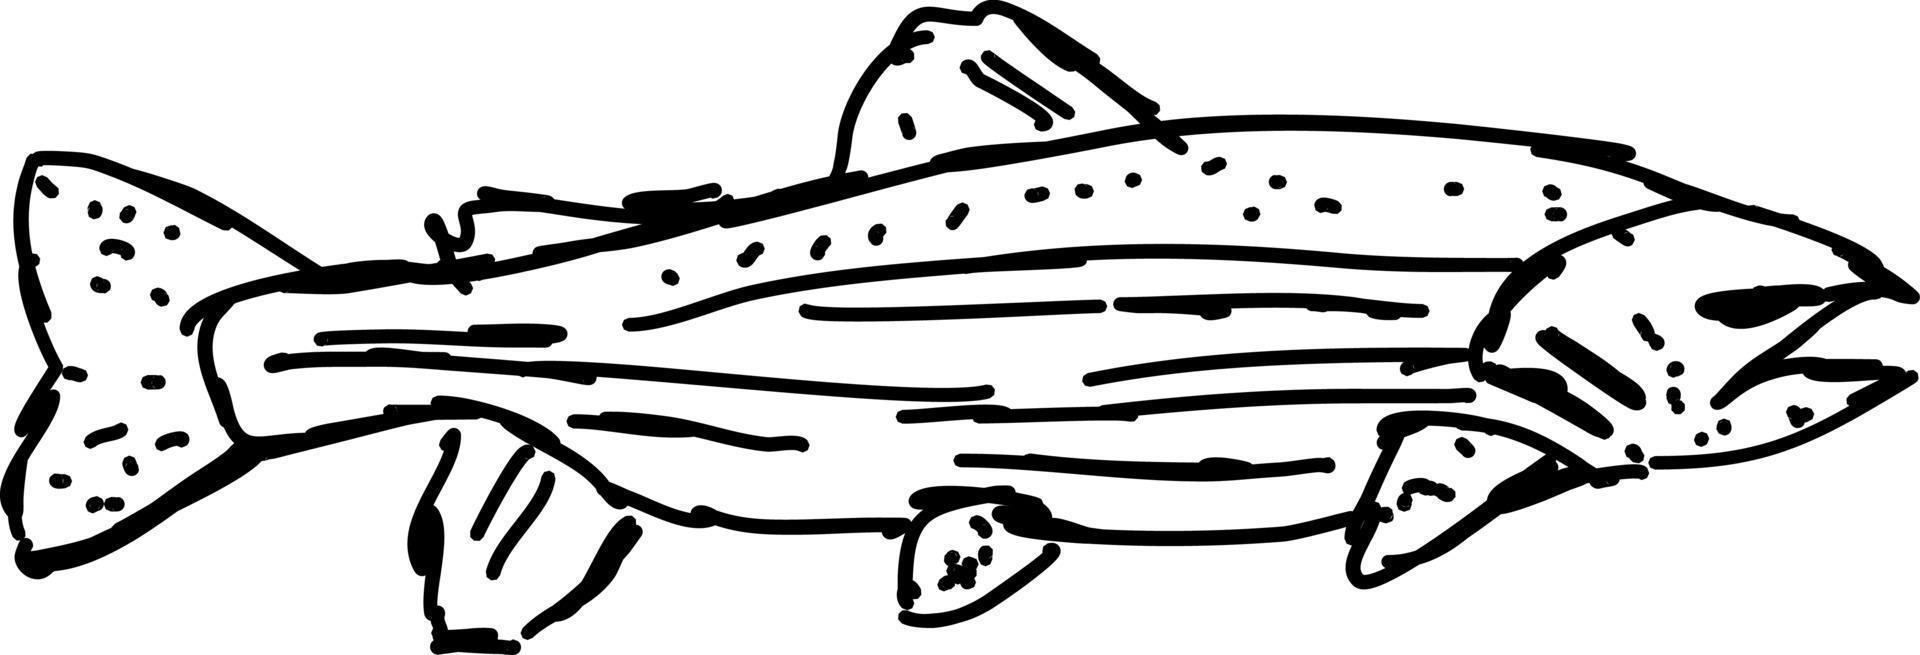 dibujo de peces, ilustración, vector sobre fondo blanco.